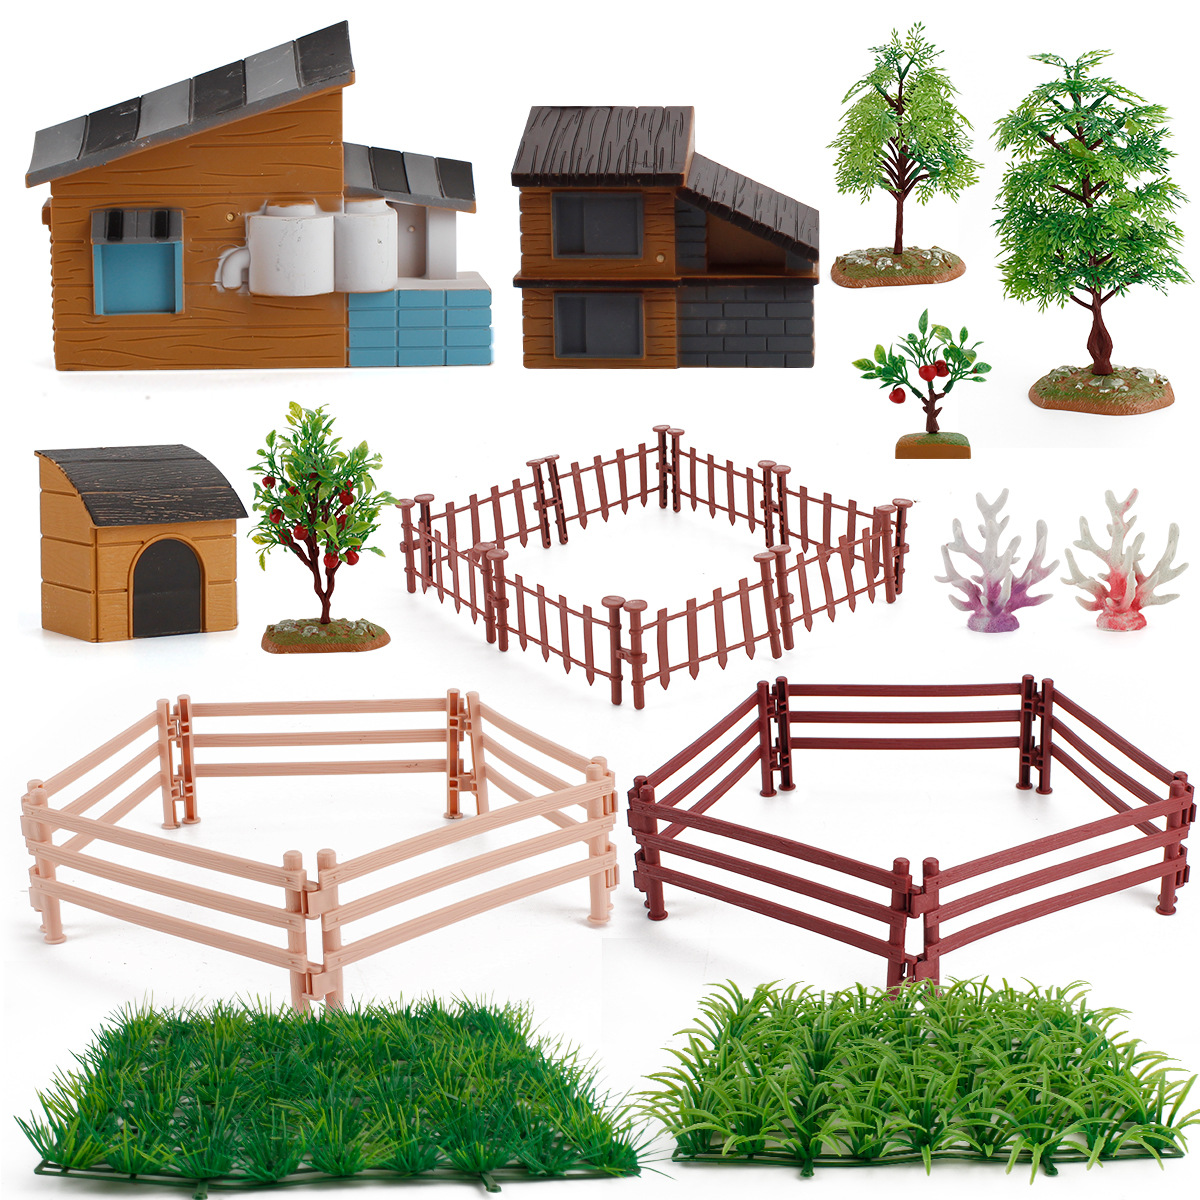 simulation desktop micro landscape farm model decoration house fruit tree water grass fence pasture decoration children‘s toys